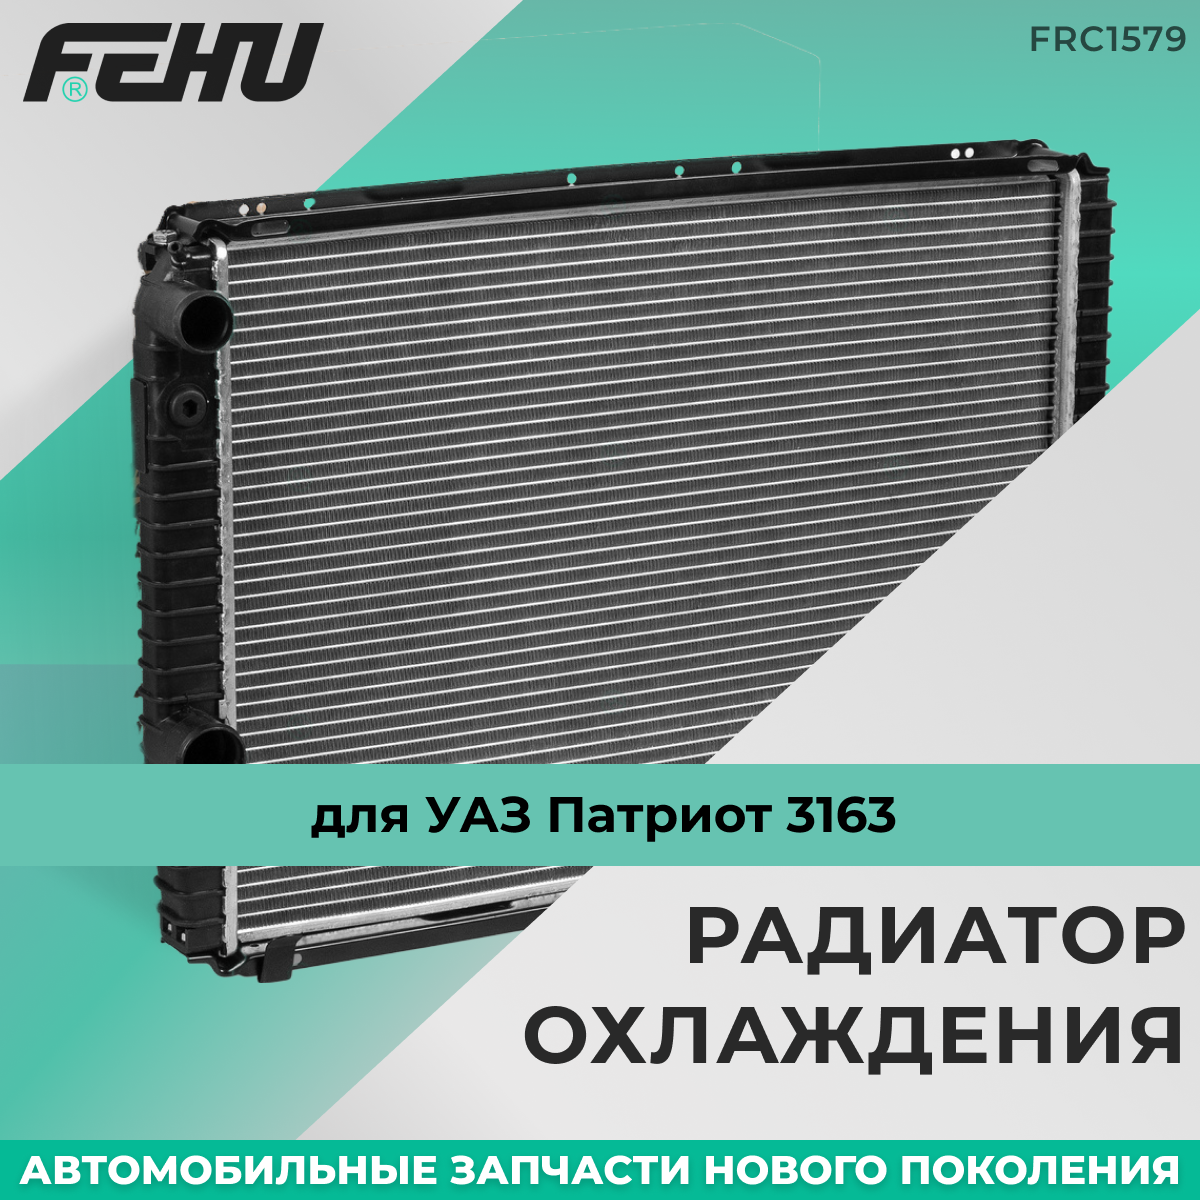 Радиатор охлаждения FEHU (феху) УАЗ/UAZ 3160-3163 с двиг. УМЗ-421, 409 арт. 31601301012; 31601301012П; 31601301010; 316080130101003